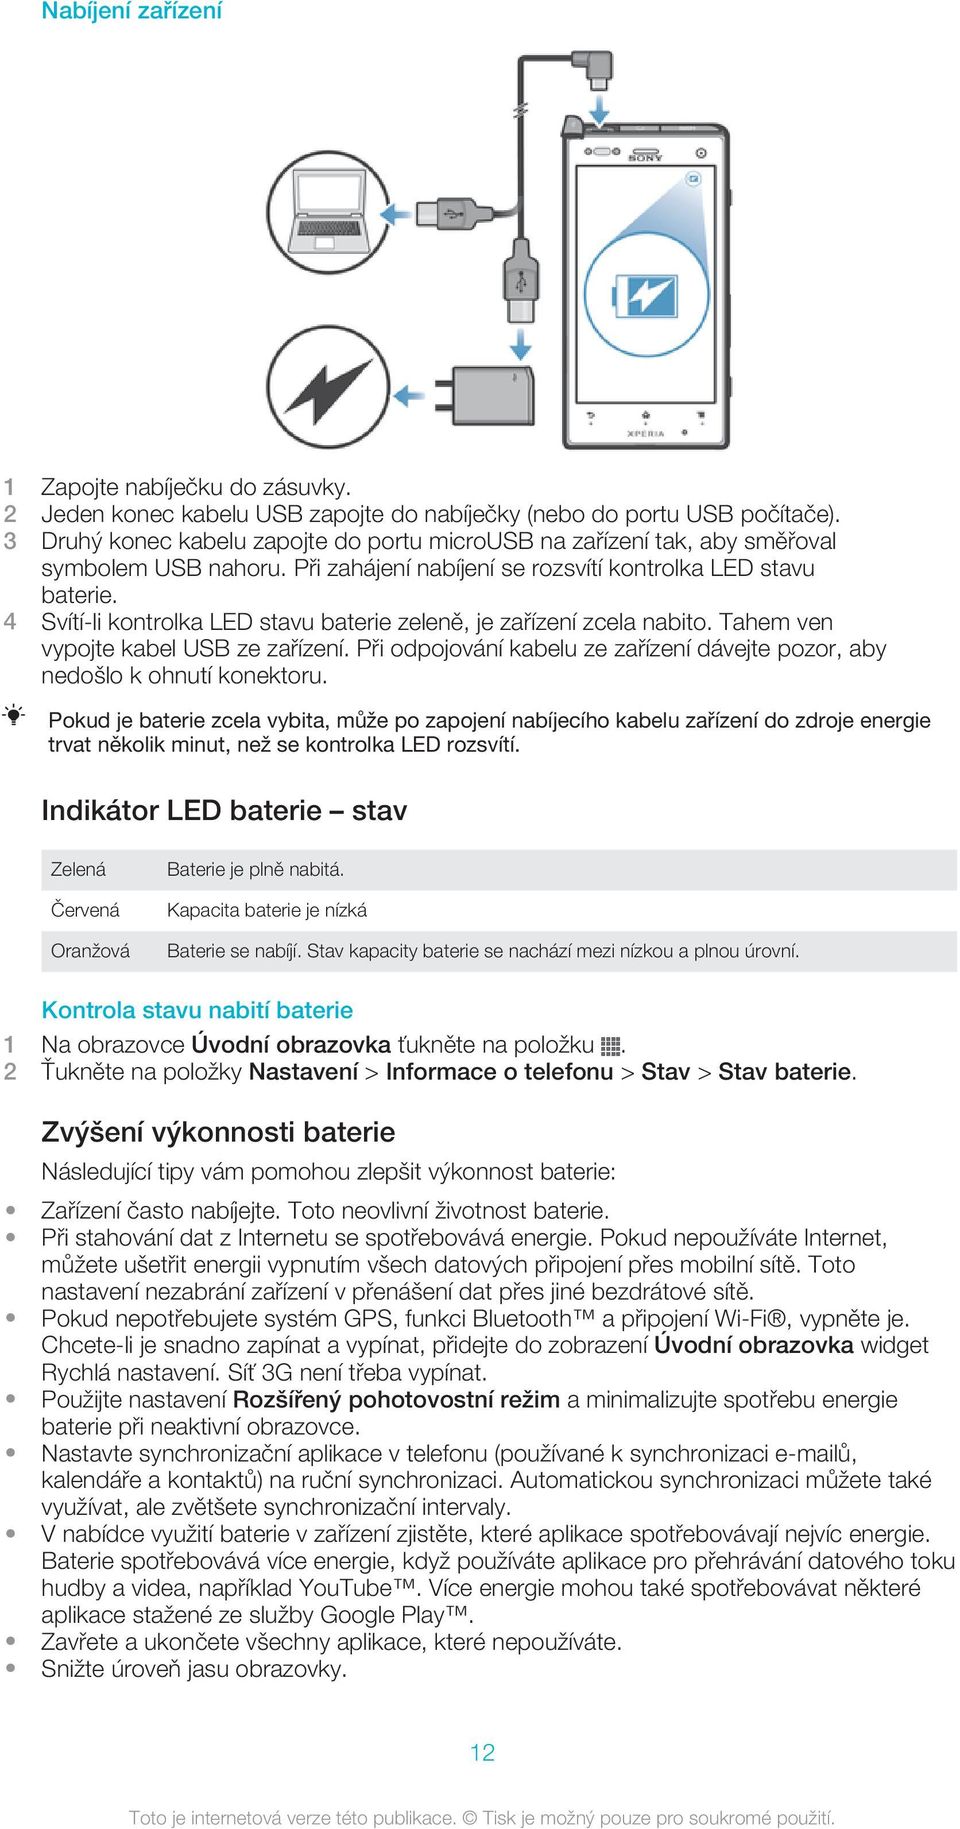 4 Svítí-li kontrolka LED stavu baterie zeleně, je zařízení zcela nabito. Tahem ven vypojte kabel USB ze zařízení. Při odpojování kabelu ze zařízení dávejte pozor, aby nedošlo k ohnutí konektoru.